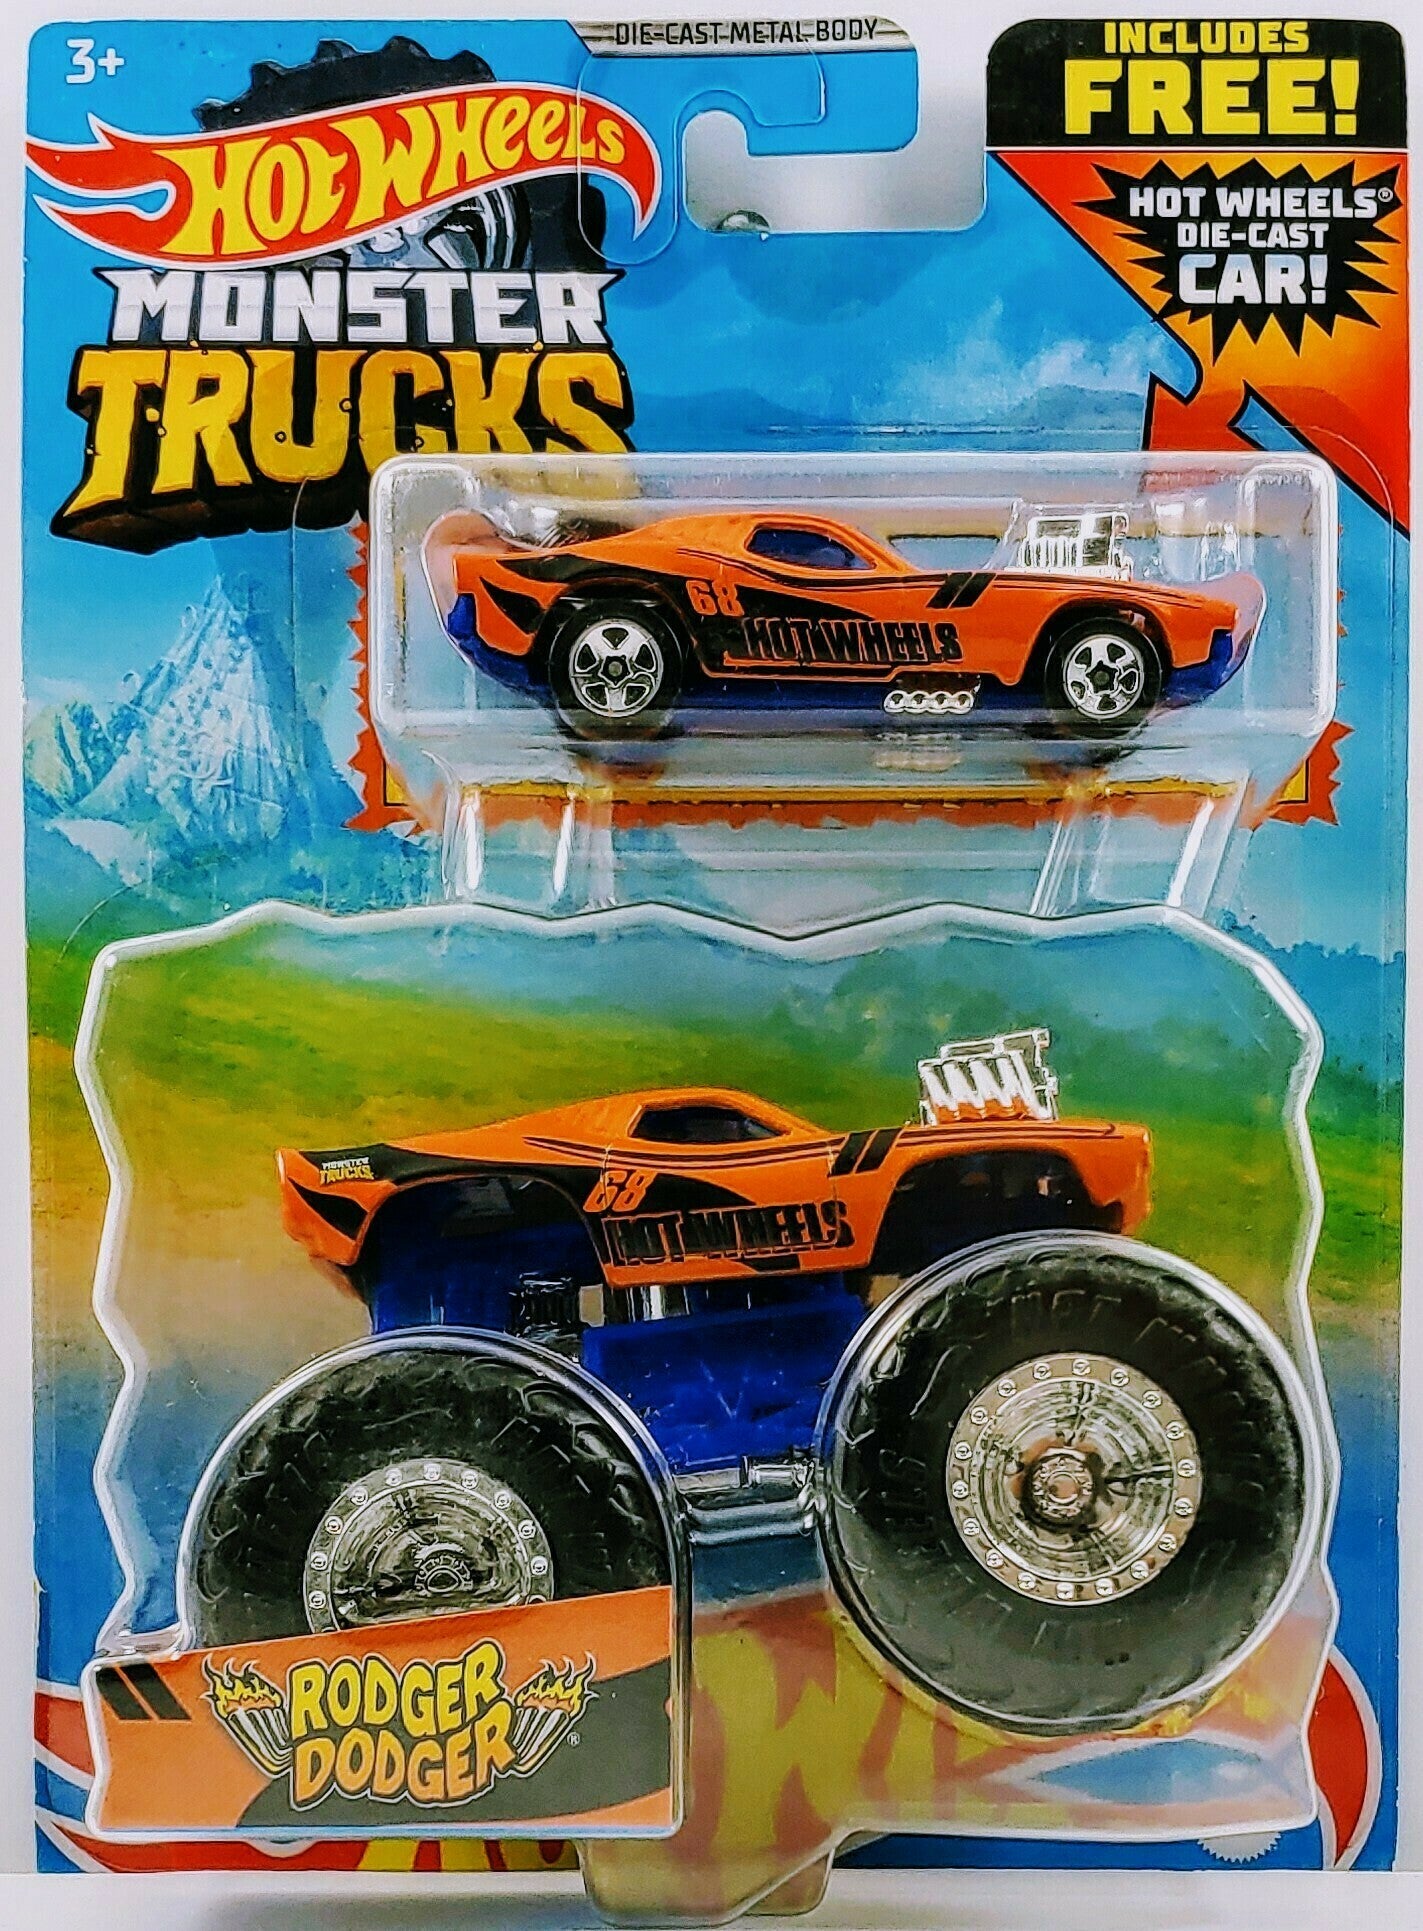 Hot Wheels 2021 - Monster Trucks - Rodger Dodger - Orange - FREE Car is a Rodger Dodger